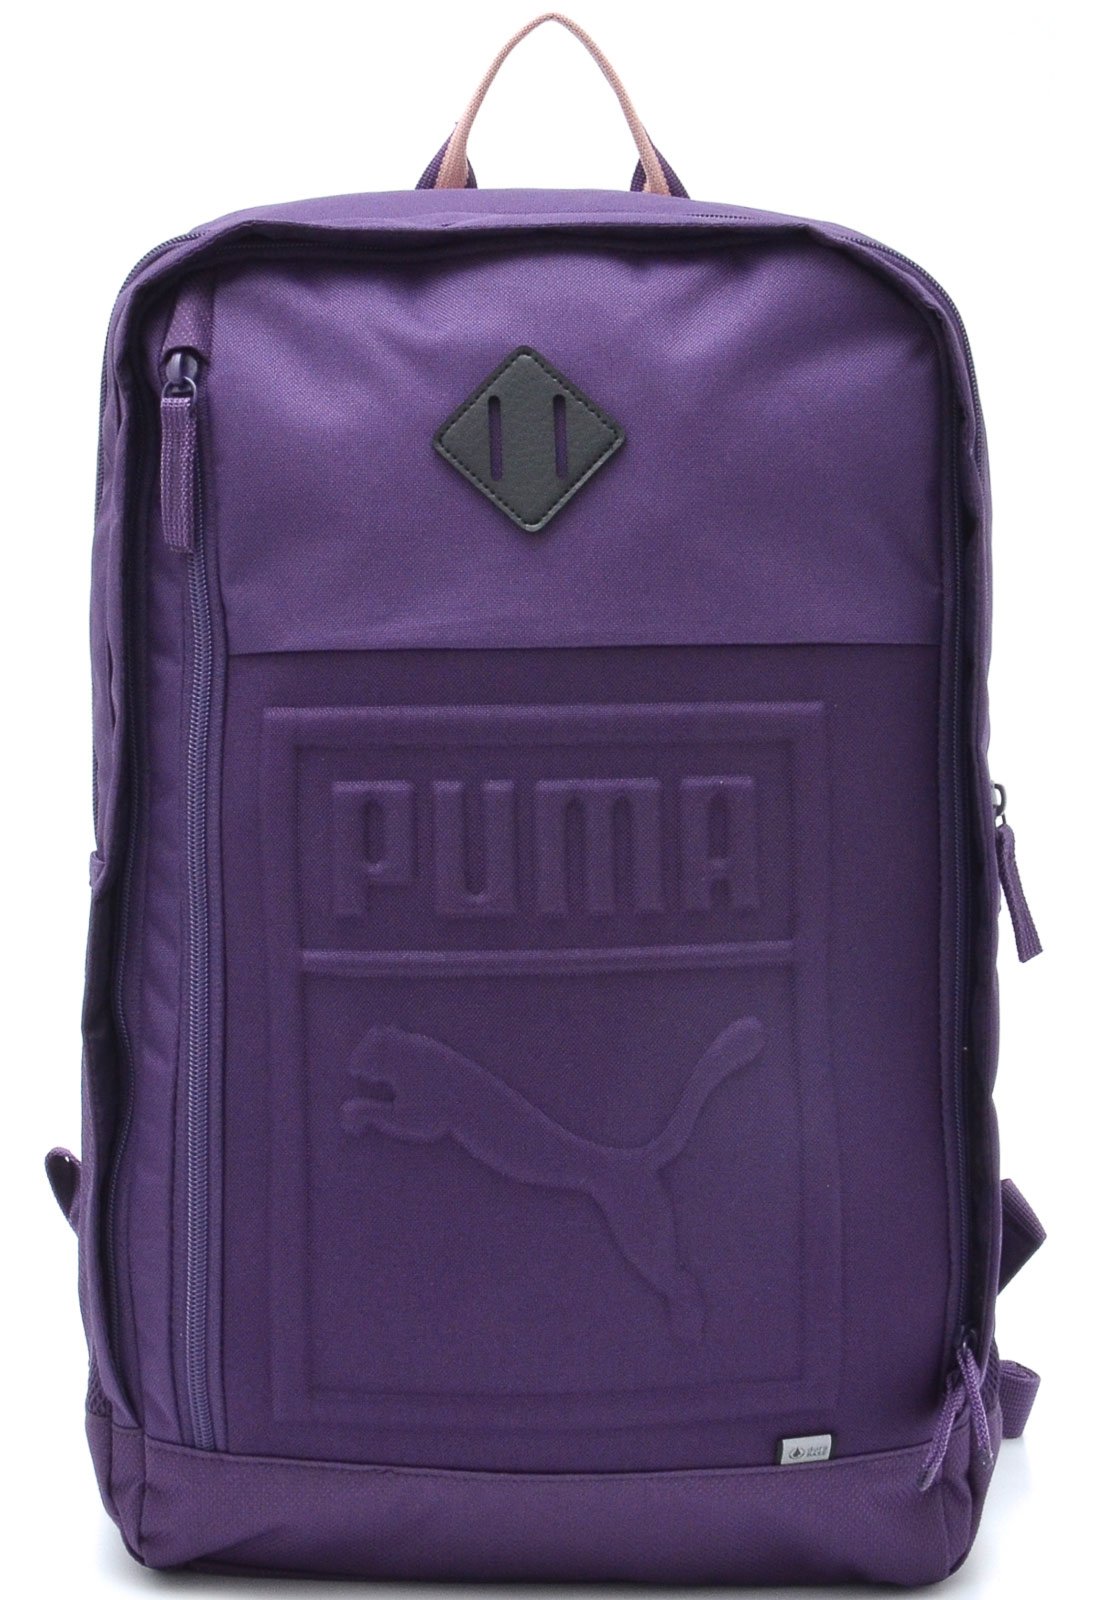 puma s backpack